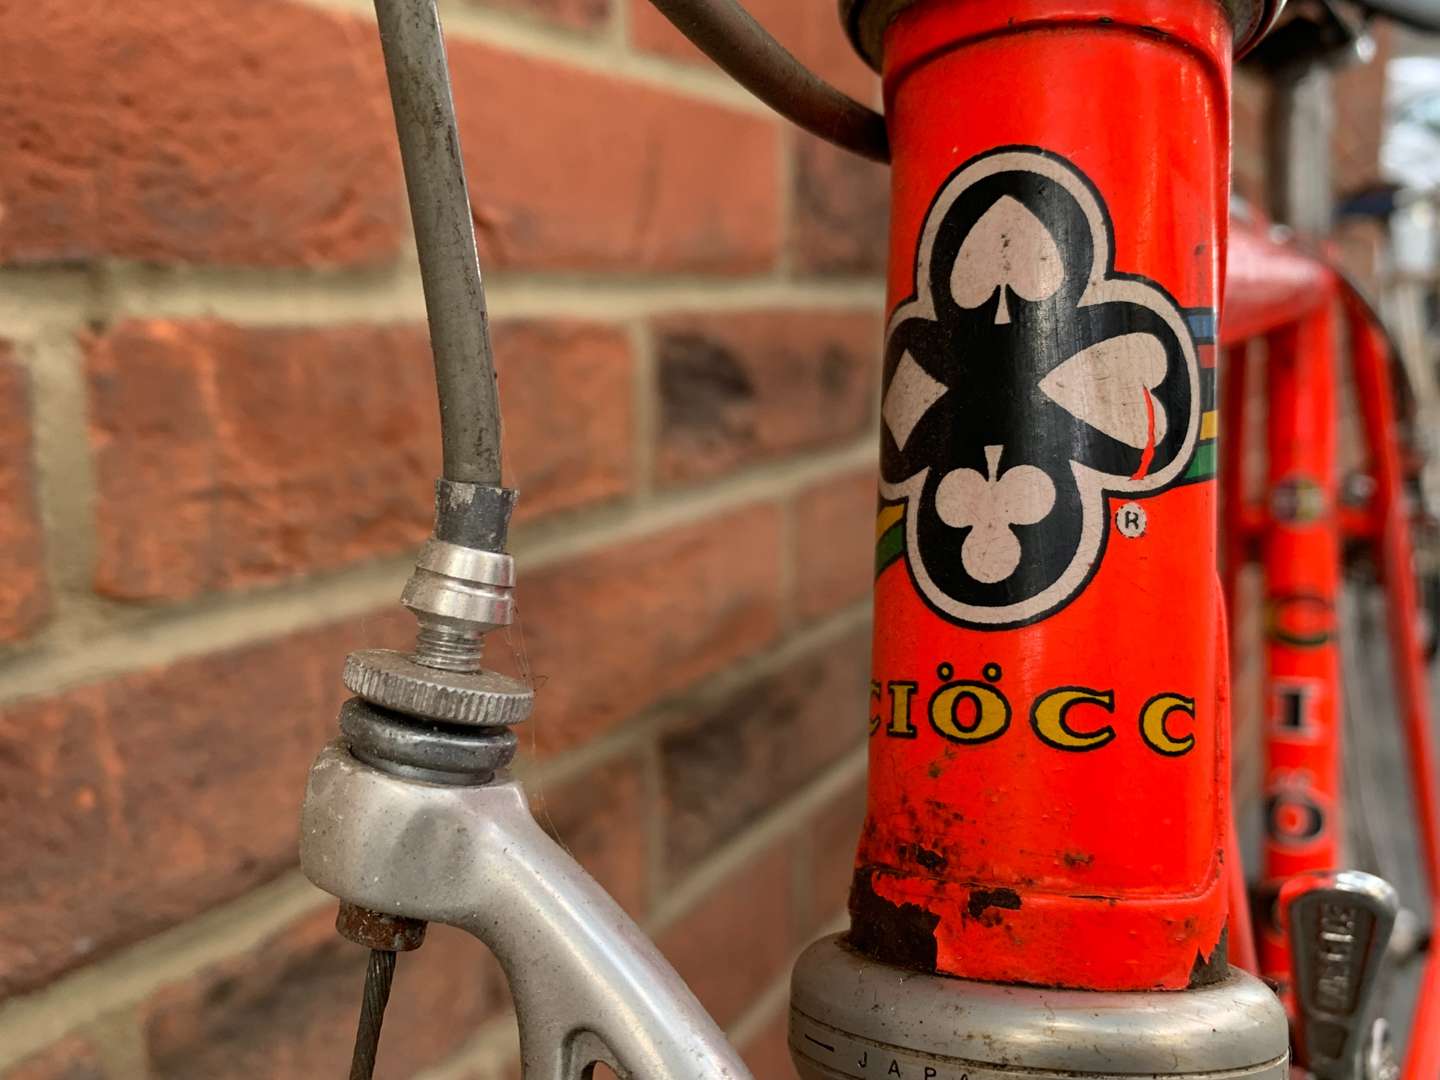 <p>Ciocc Race Bike</p>